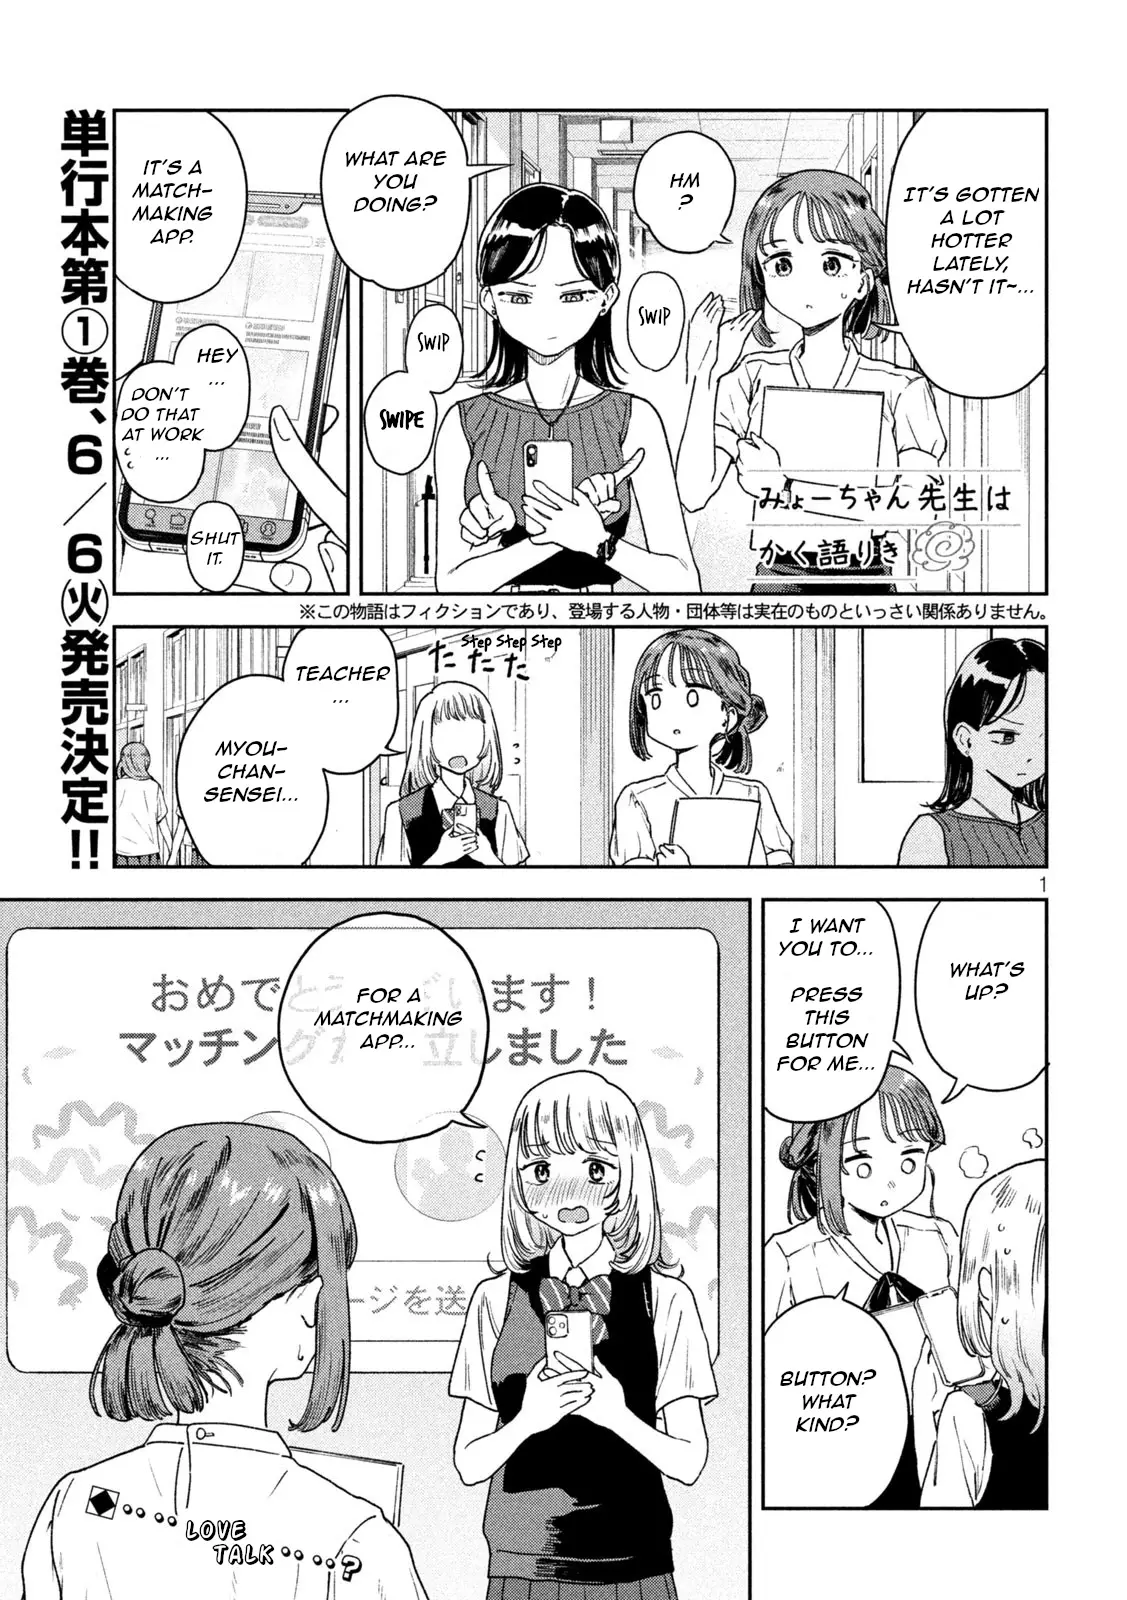 Miyo-Chan Sensei Said So - 8 page 1-4bfd1e13